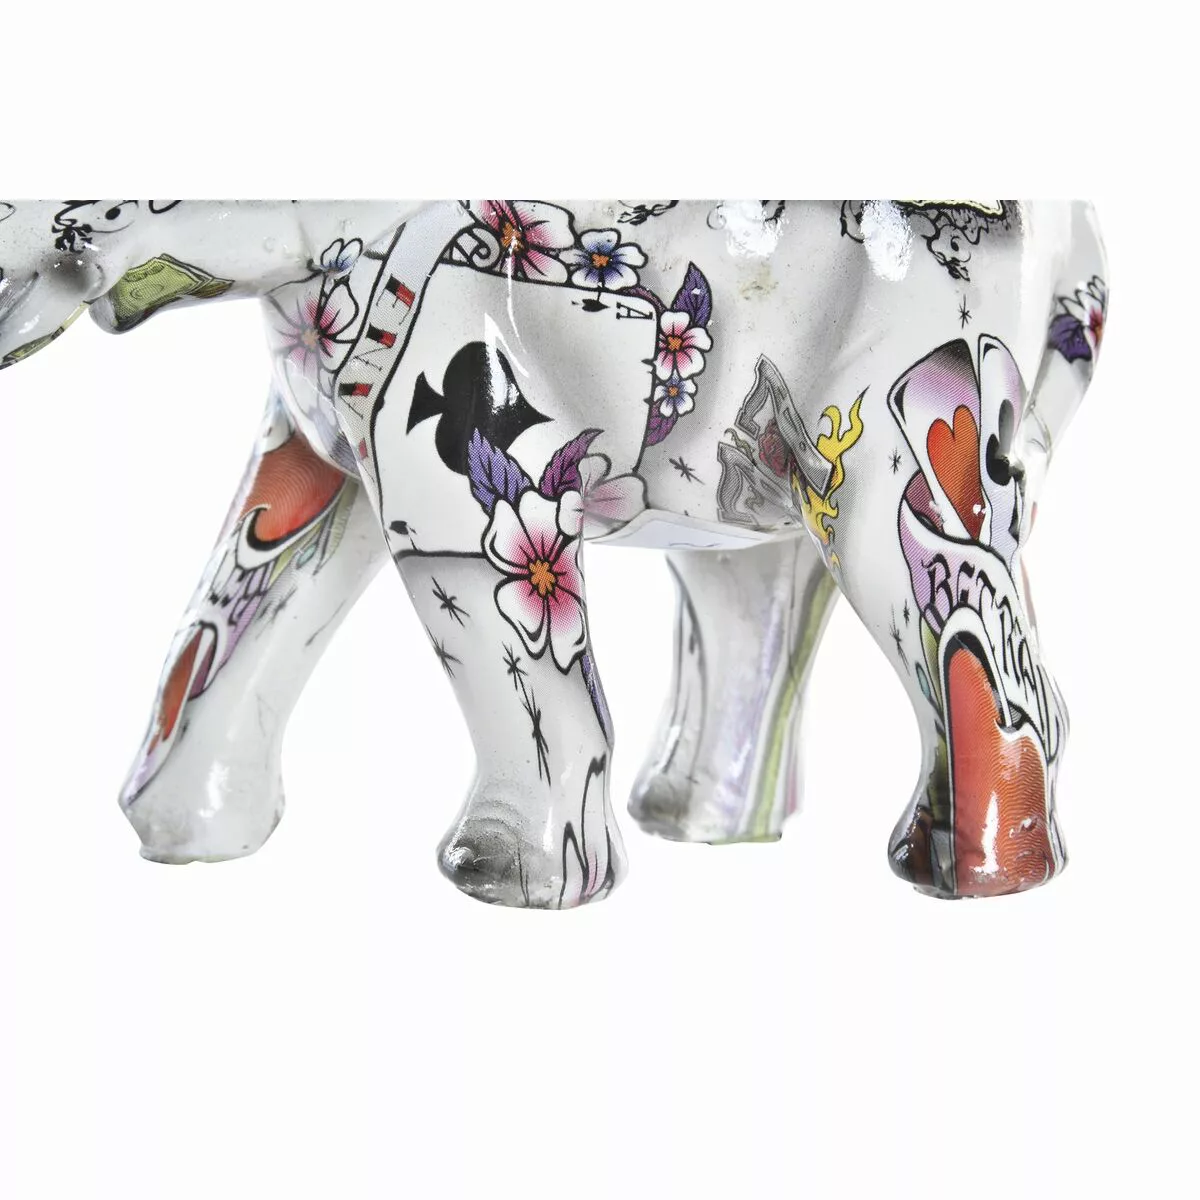 Deko-figur Dkd Home Decor Elefant Weiß Harz Bunt (11 X 5 X 9 Cm) günstig online kaufen